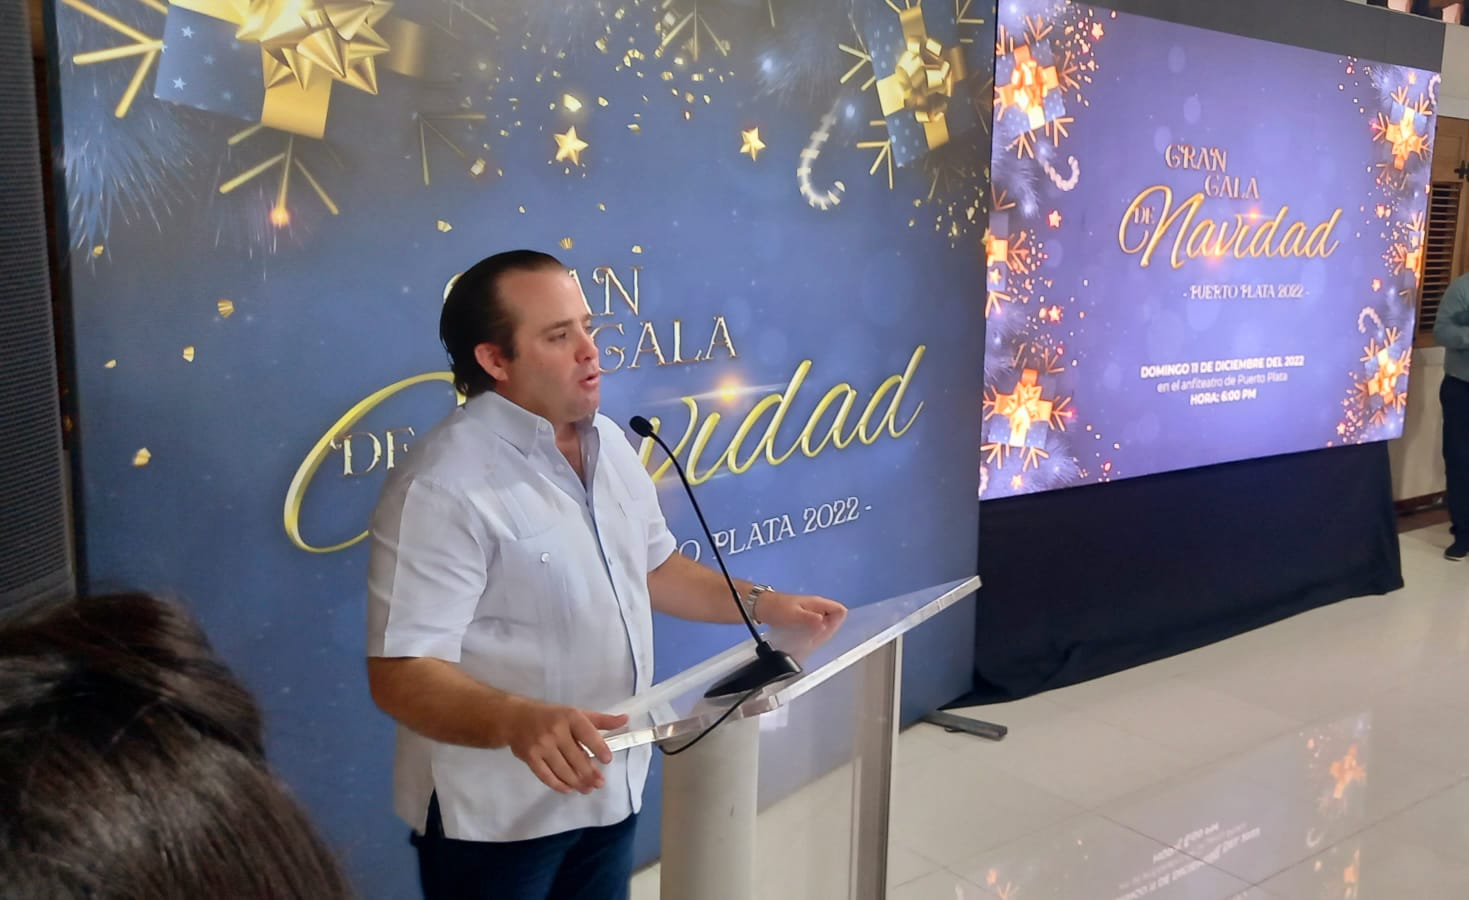 Paliza anuncia “Gran Gala de Navidad 2022” en el Anfiteatro de Puerto Plata Por Antonio Heredia